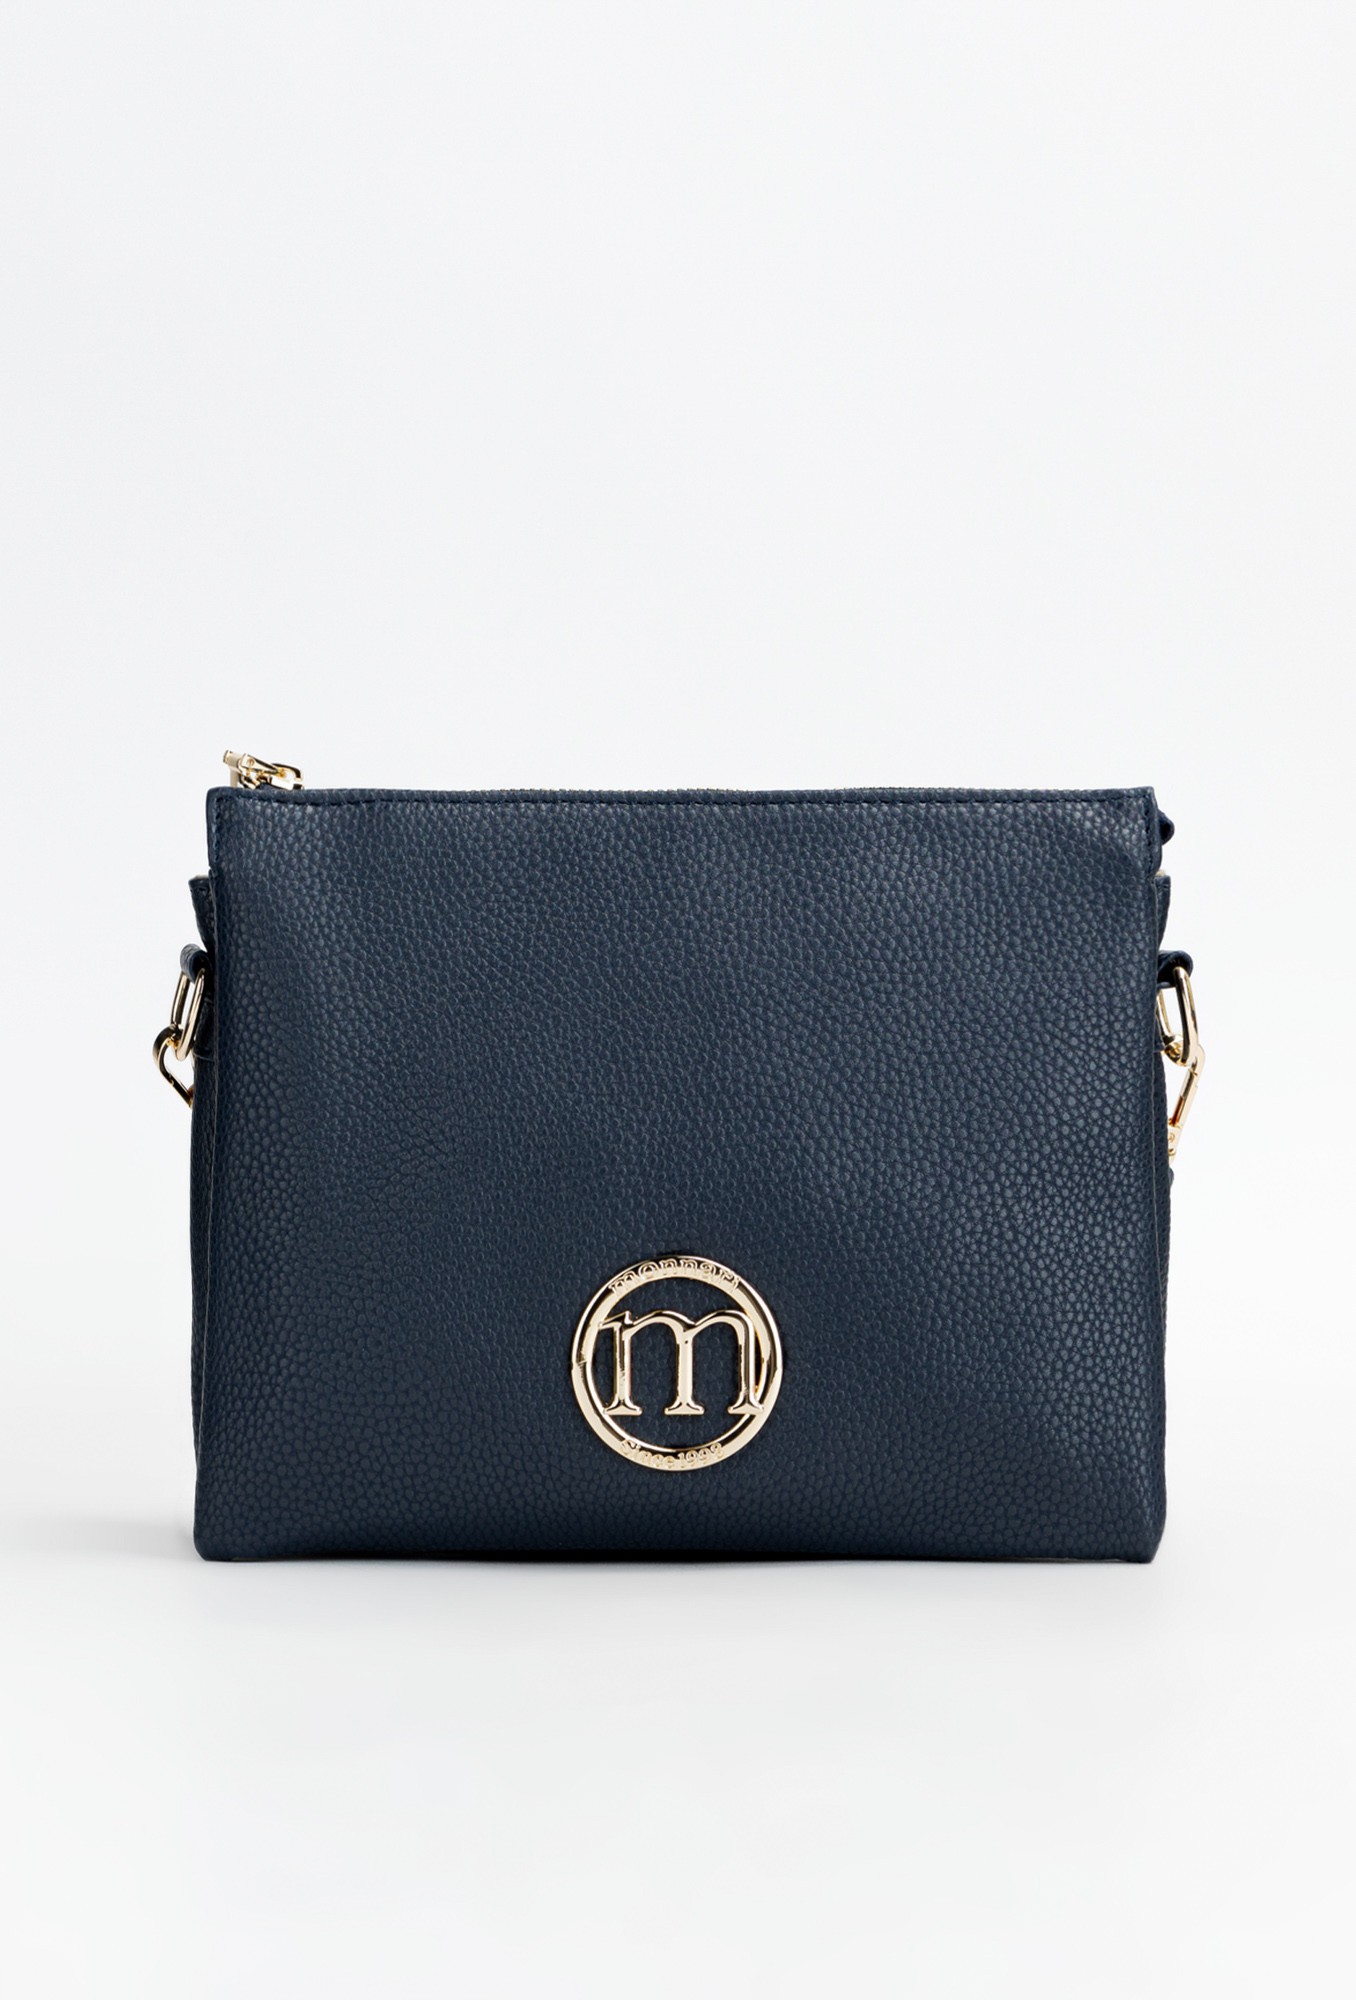 Monnari Bags Dámská kabelka s logem značky Monnari Navy Blue OS